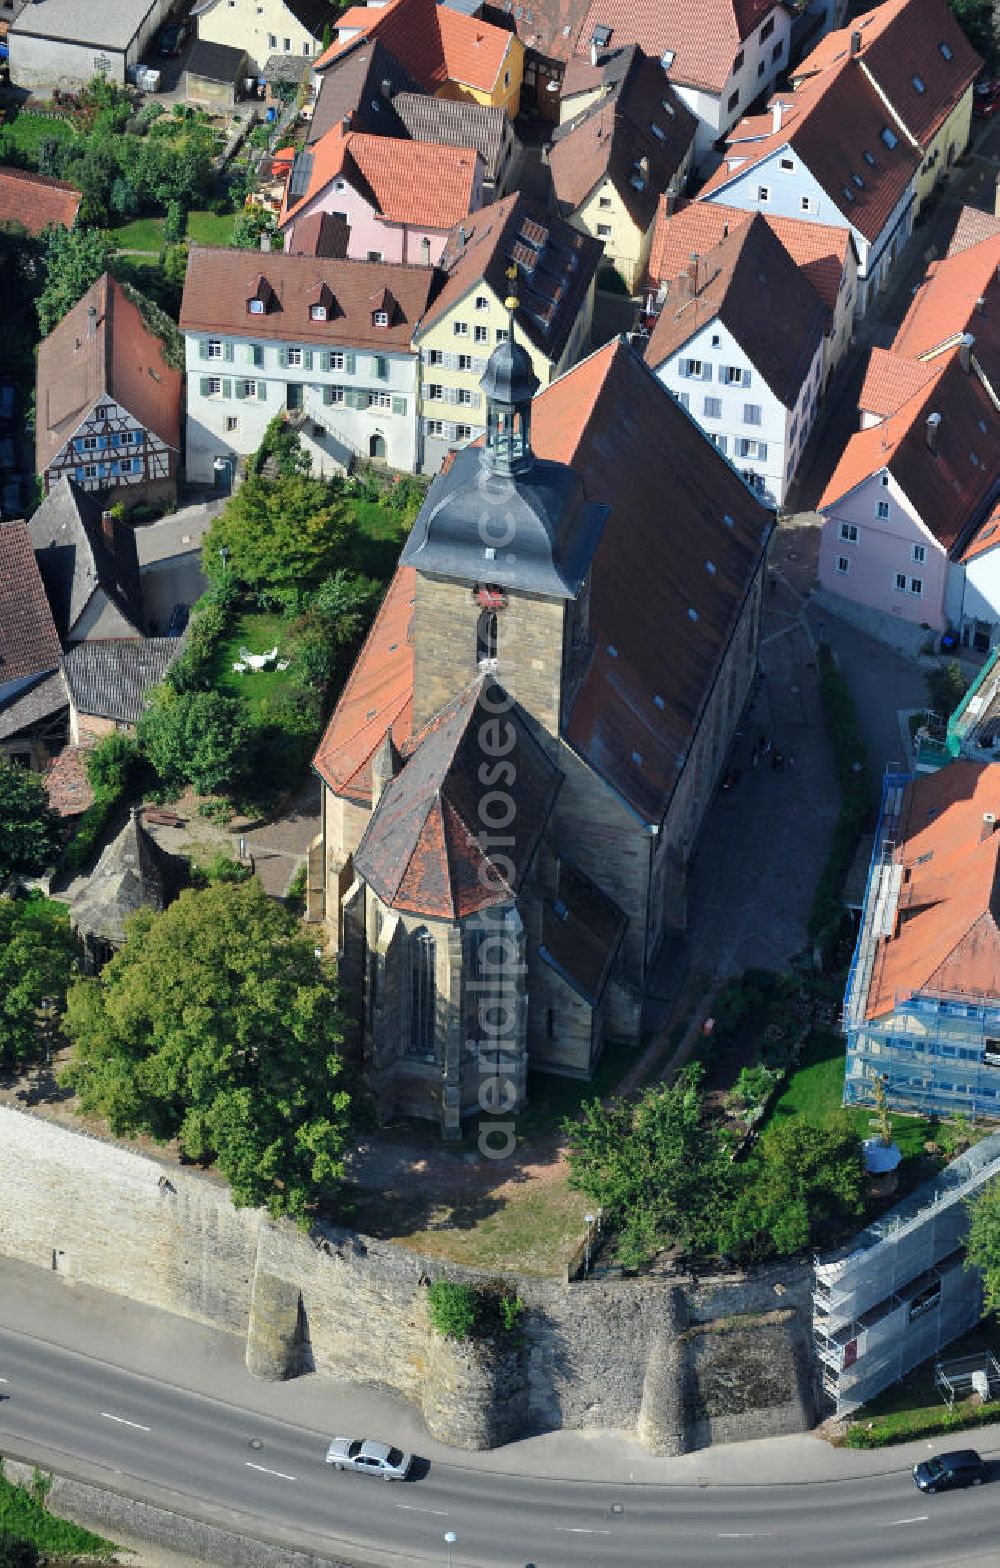 Aerial photograph Lauffen am Neckar - Die Regiswindiskirche an der Kiesstraße in Lauffen am Neckar in Baden-Württemberg. Das Bauwerk ist eine evangelische Pfarrkirche. The Regiswindiskirche at the street Kiesstrasse in Lauffen am Necker in Baden-Wuerttemberg.